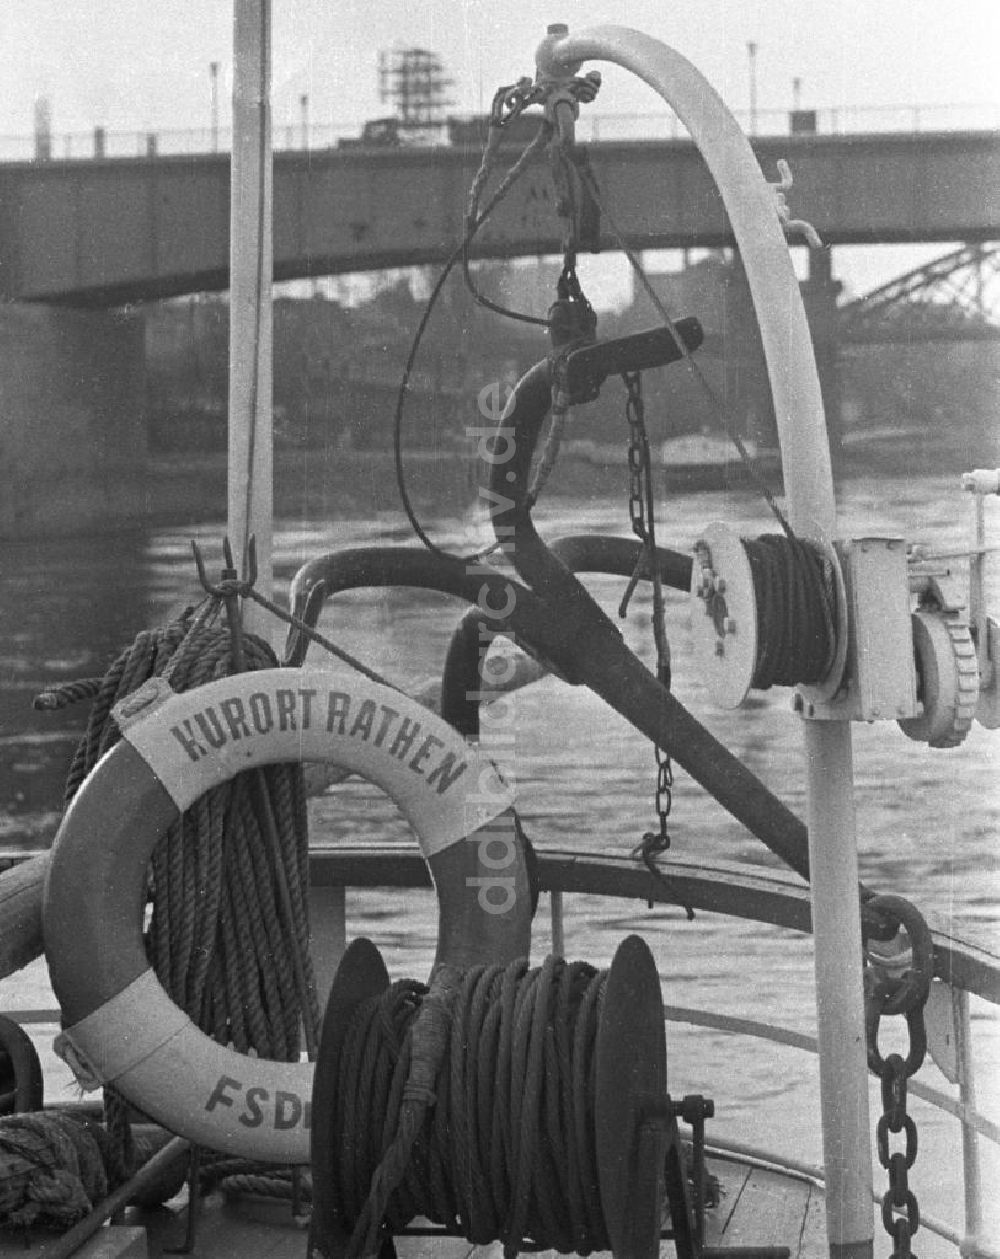 Rathen: Unterwegs auf der Elbe - Blick vom Passagierschiff Kurort Rathen, 1960